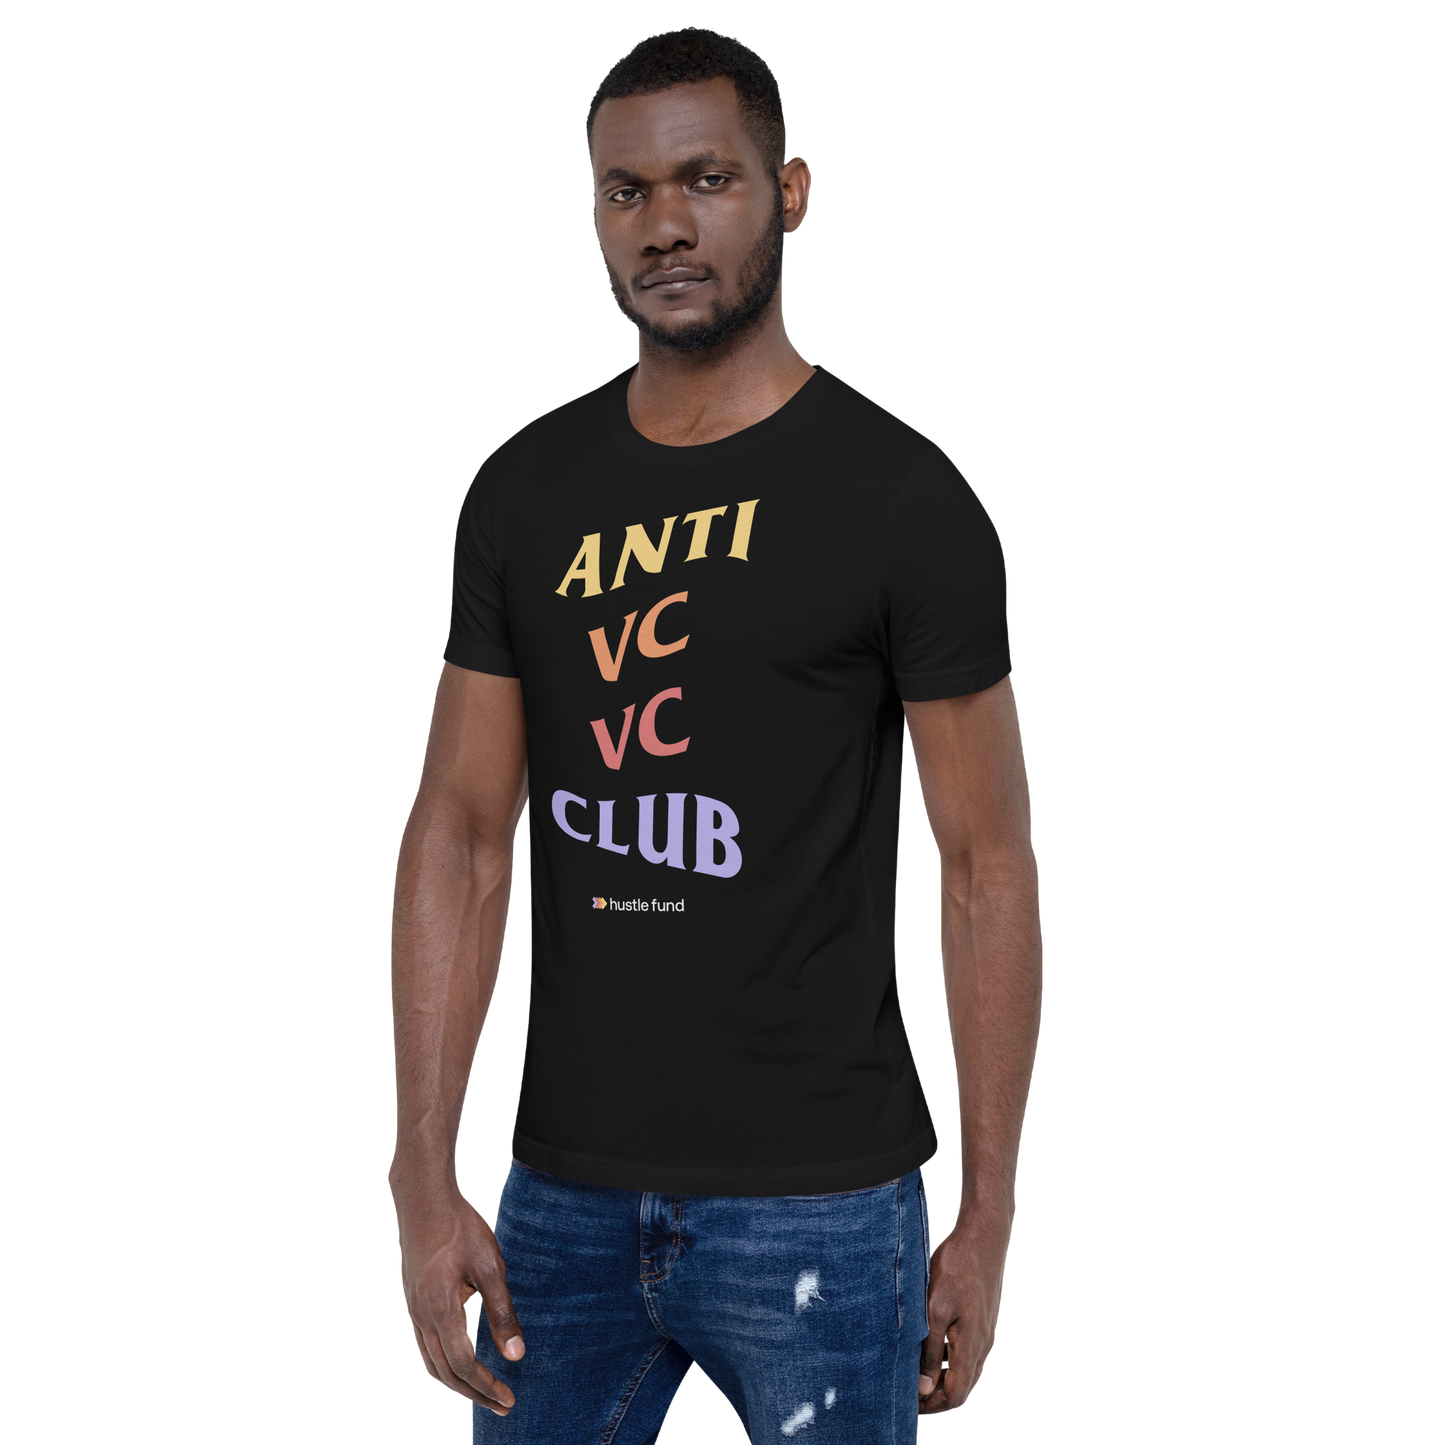 Anti VC VC Club T-Shirt